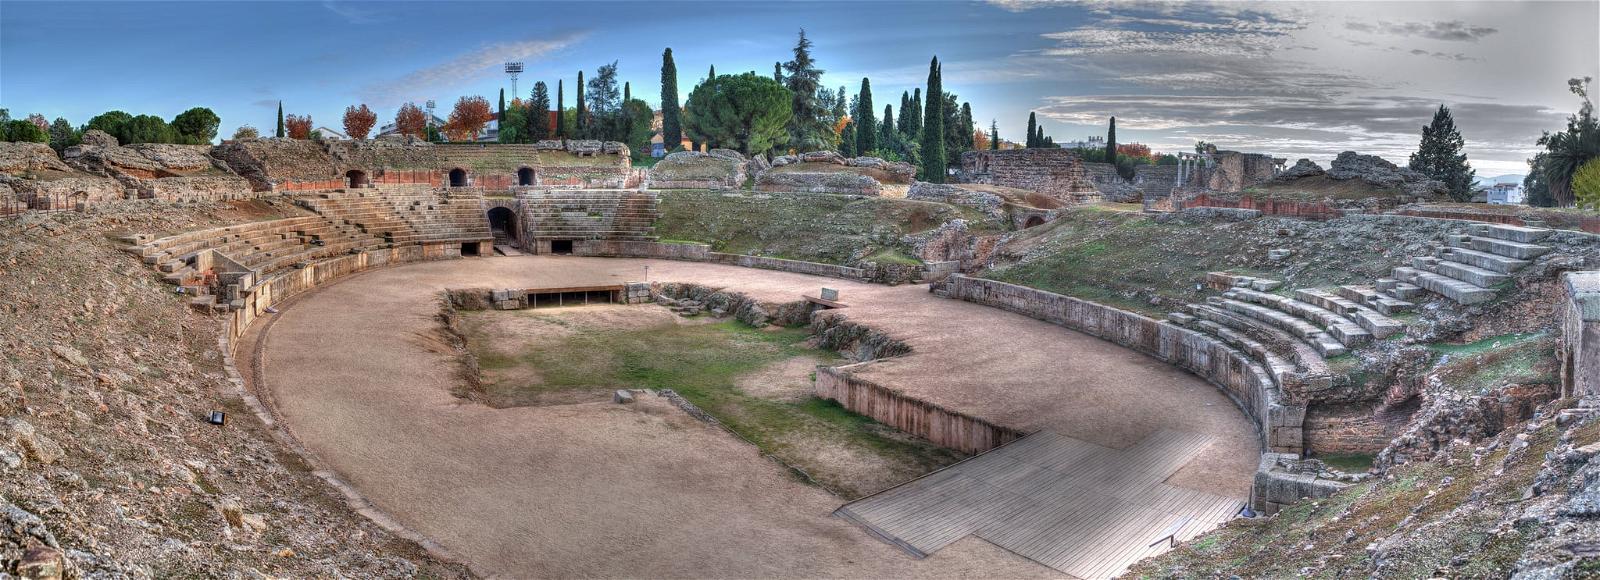 Obraz Anfiteatro Romano. romano